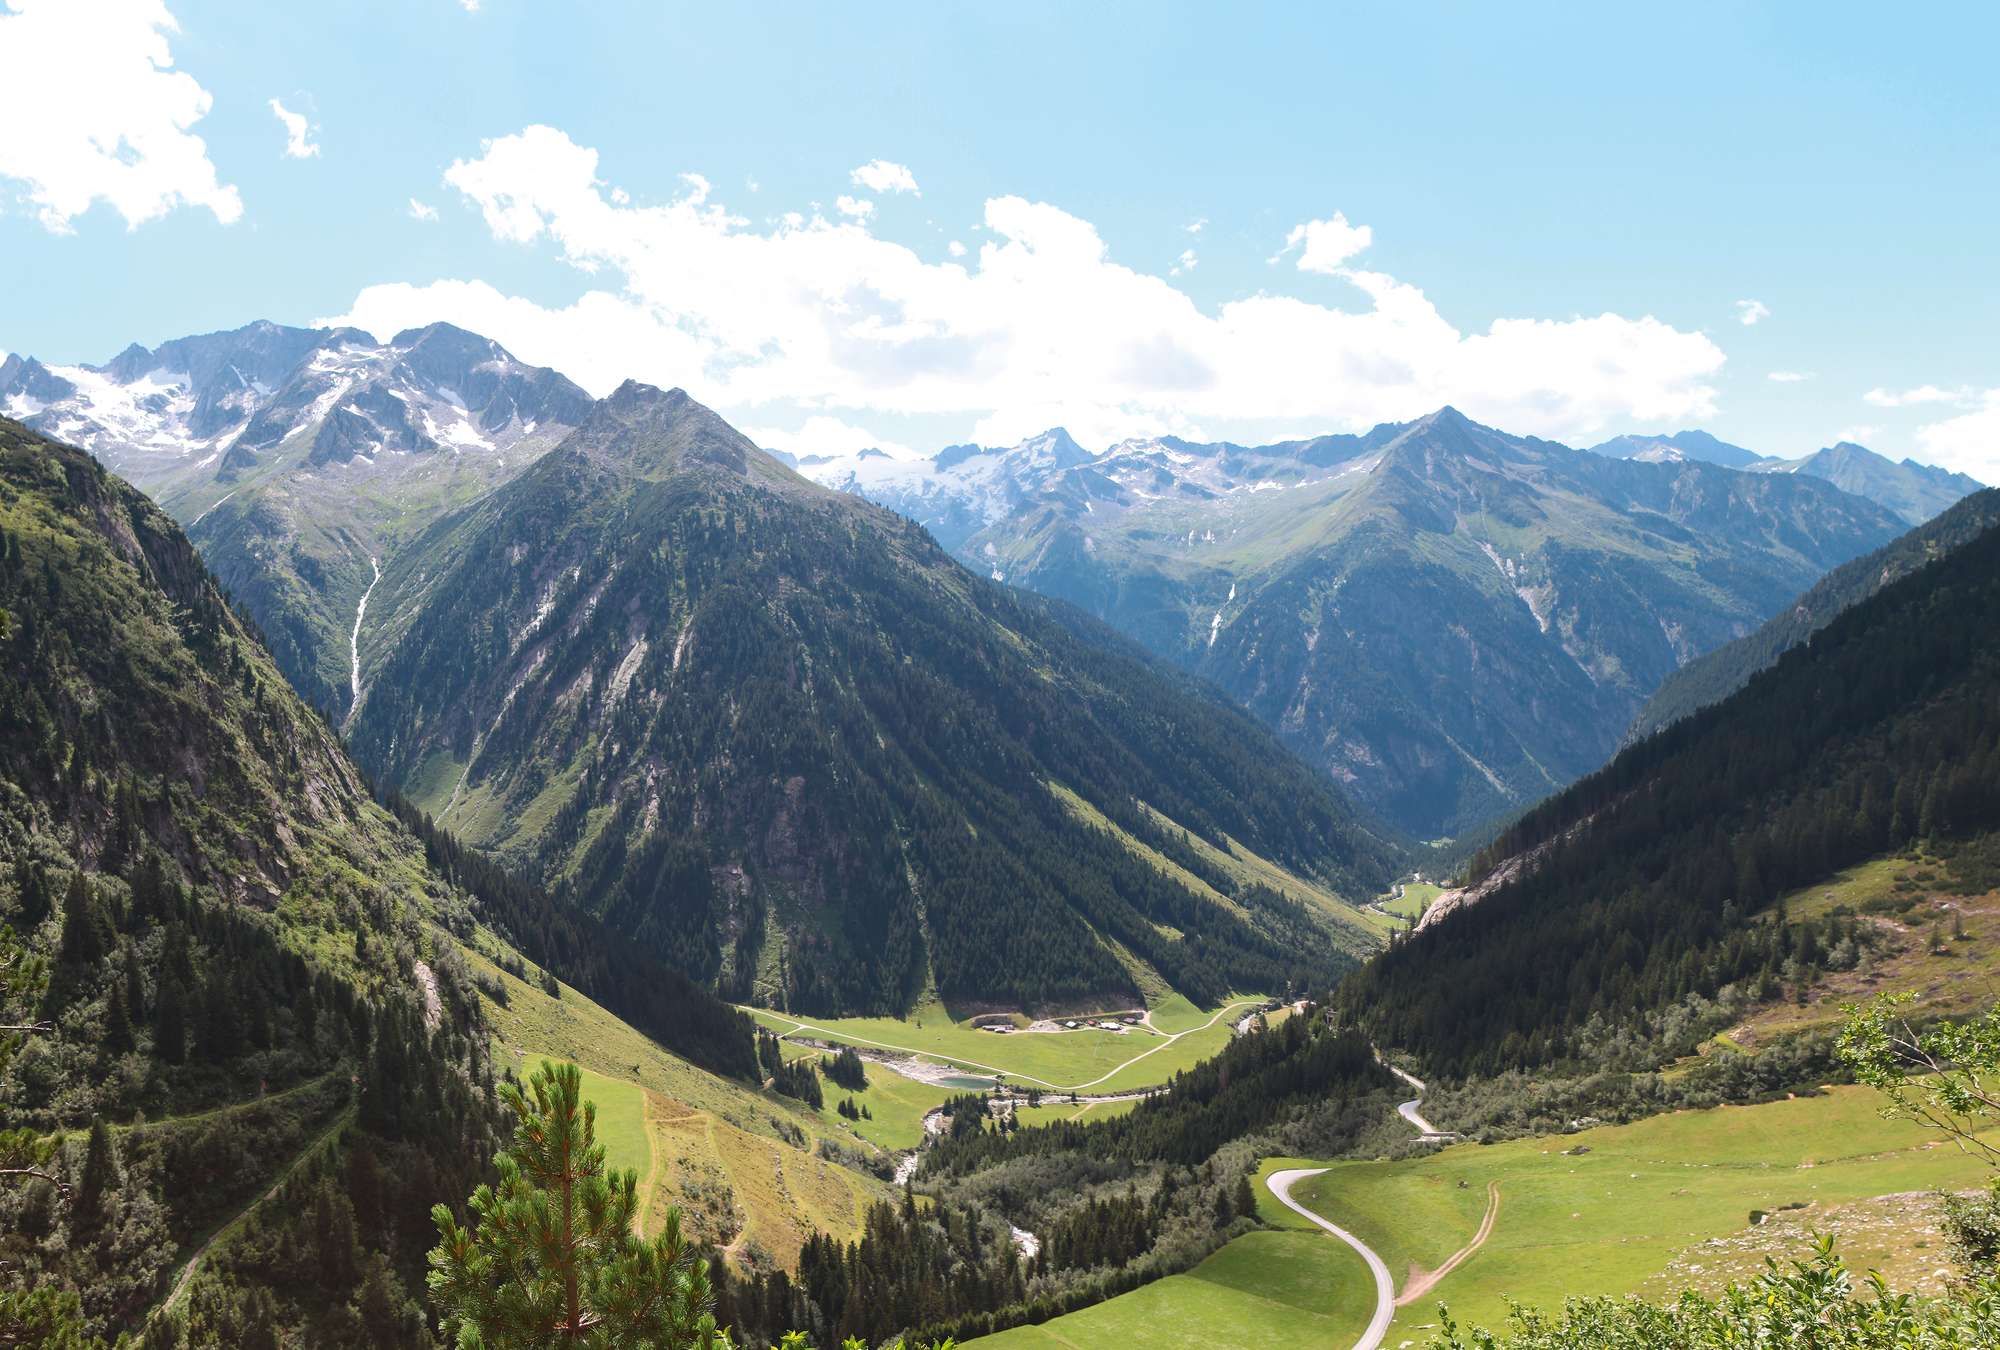             Fototapete mit Alpen – Talblick in Österreich
        